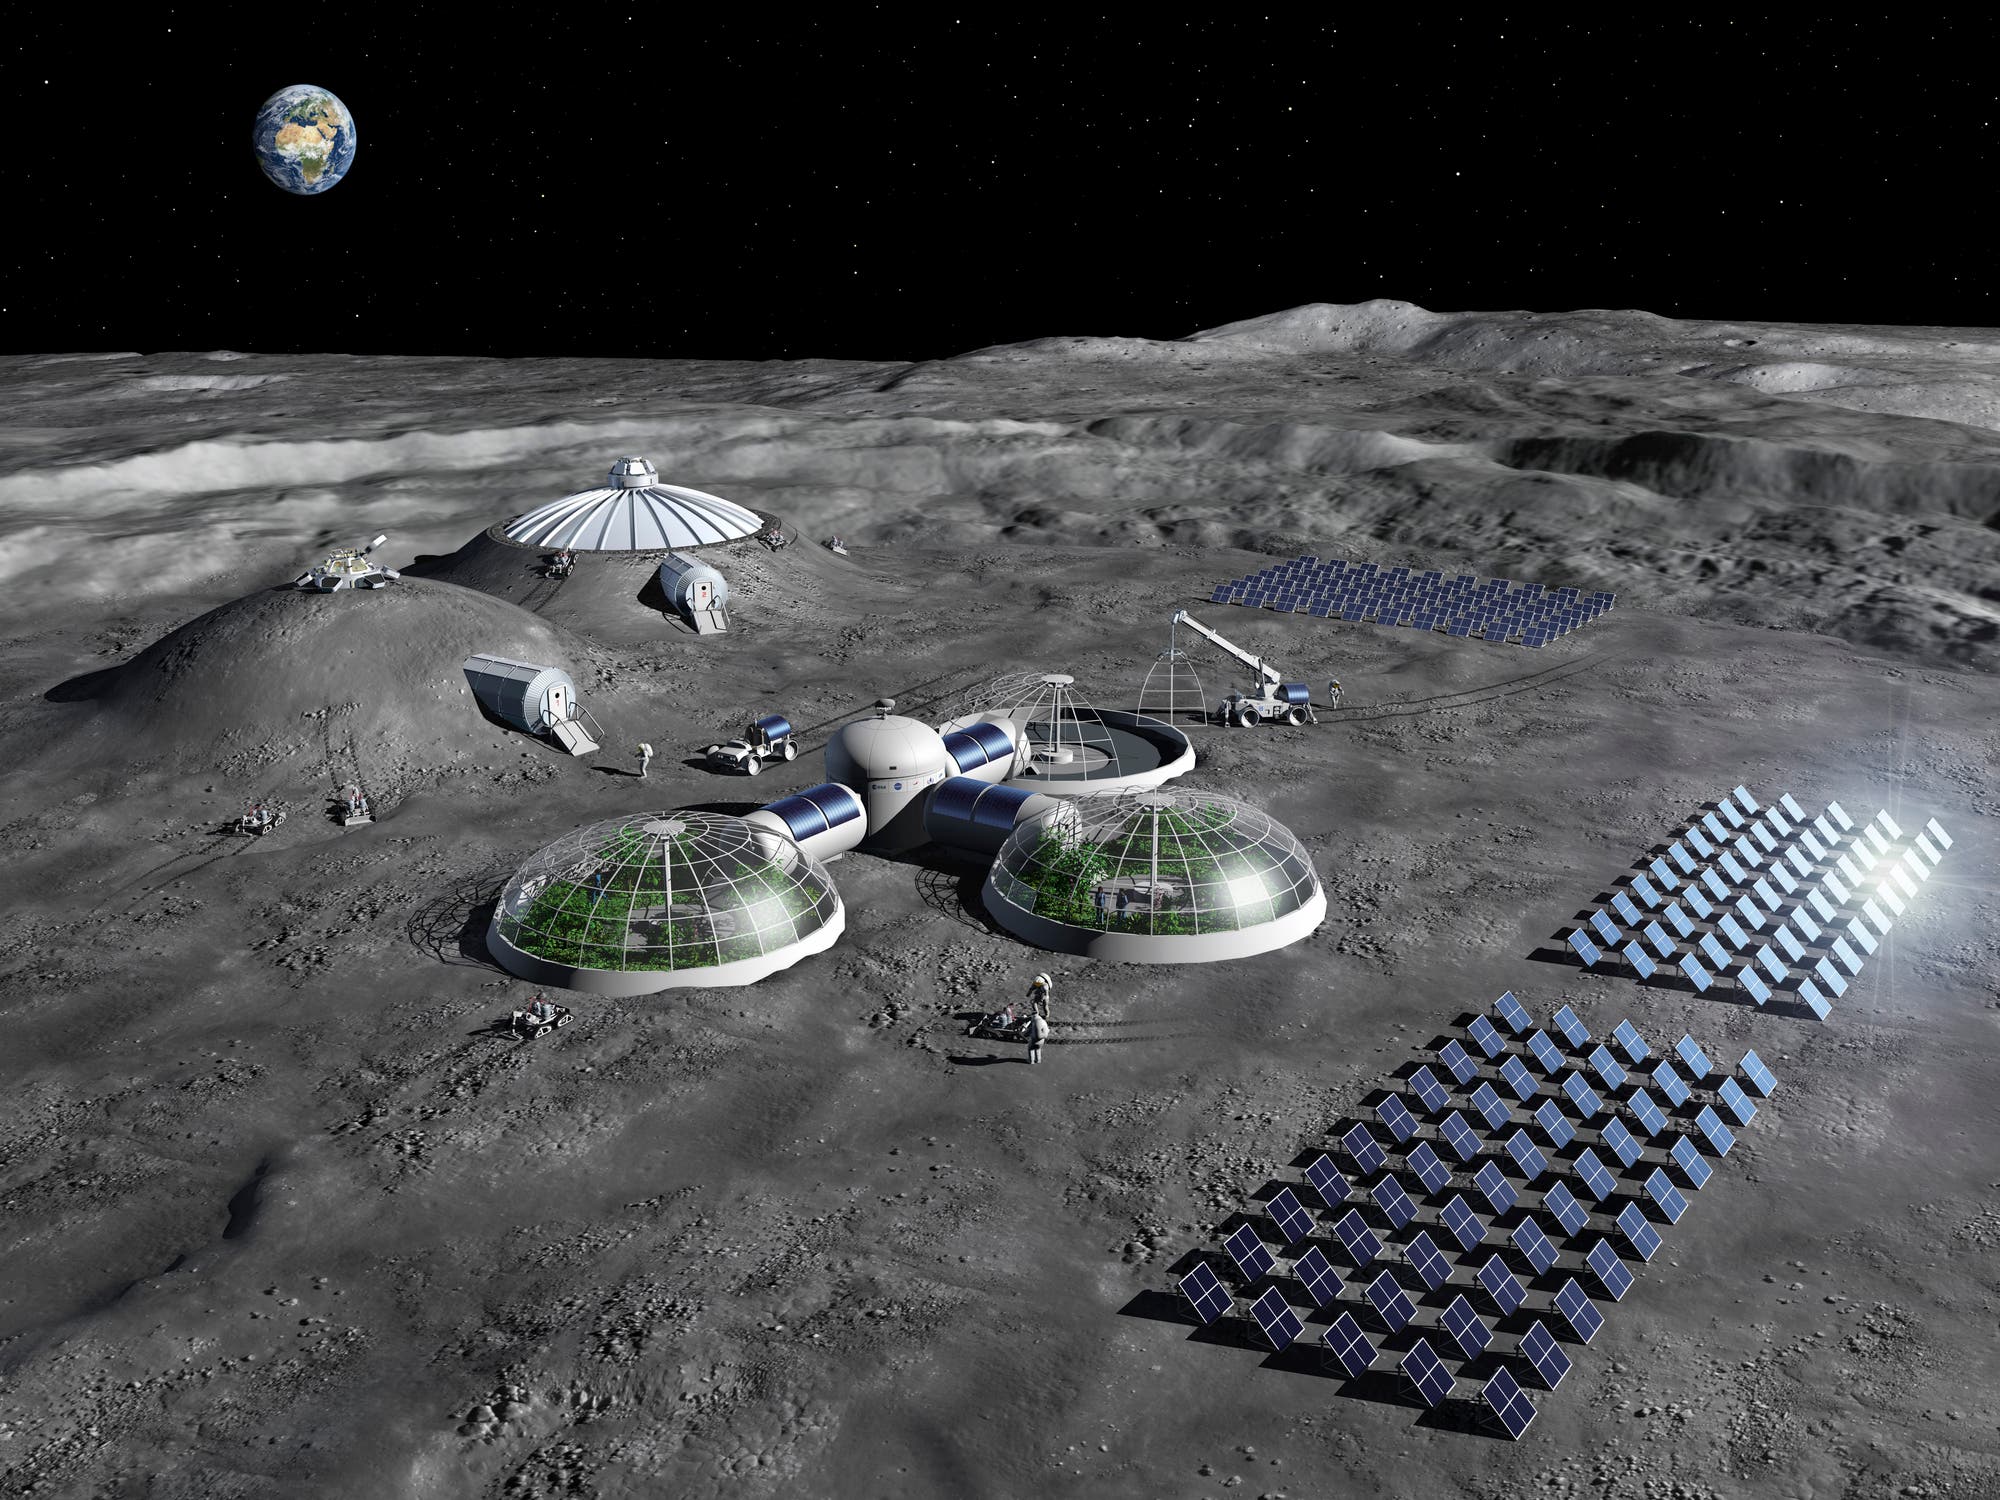 Die Illustration zeigt eine mögliche Mondbasis mit Solarzellen zur Energieversorgung, Gewächshäusern für Nahrungsmittel sowie Wohnbereichen, die von Hügeln aus Mondgestein gegen kosmische Strahlung geschützt werden.